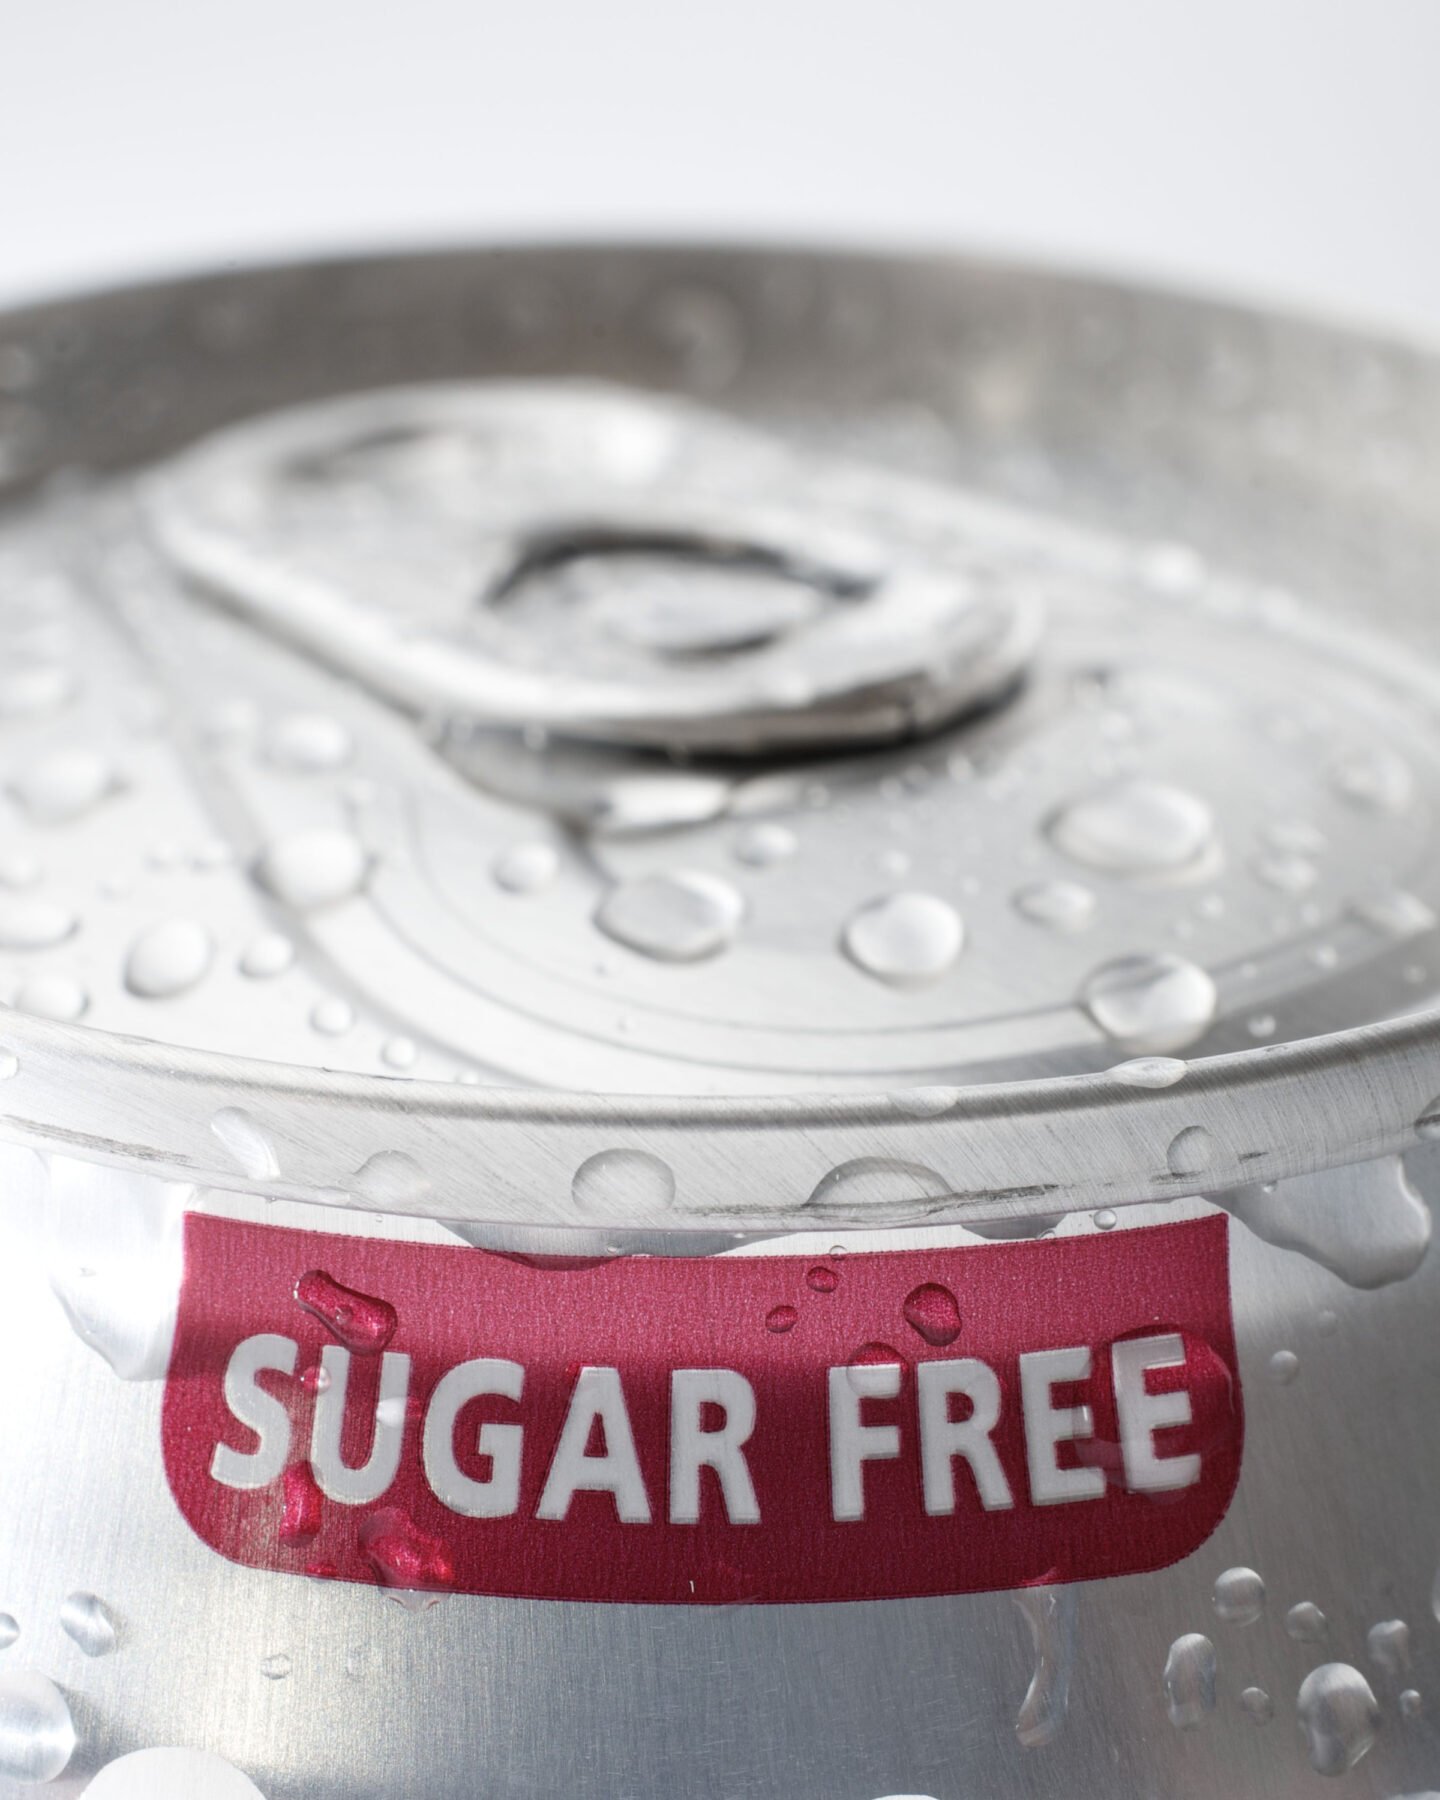 sugar free soda can